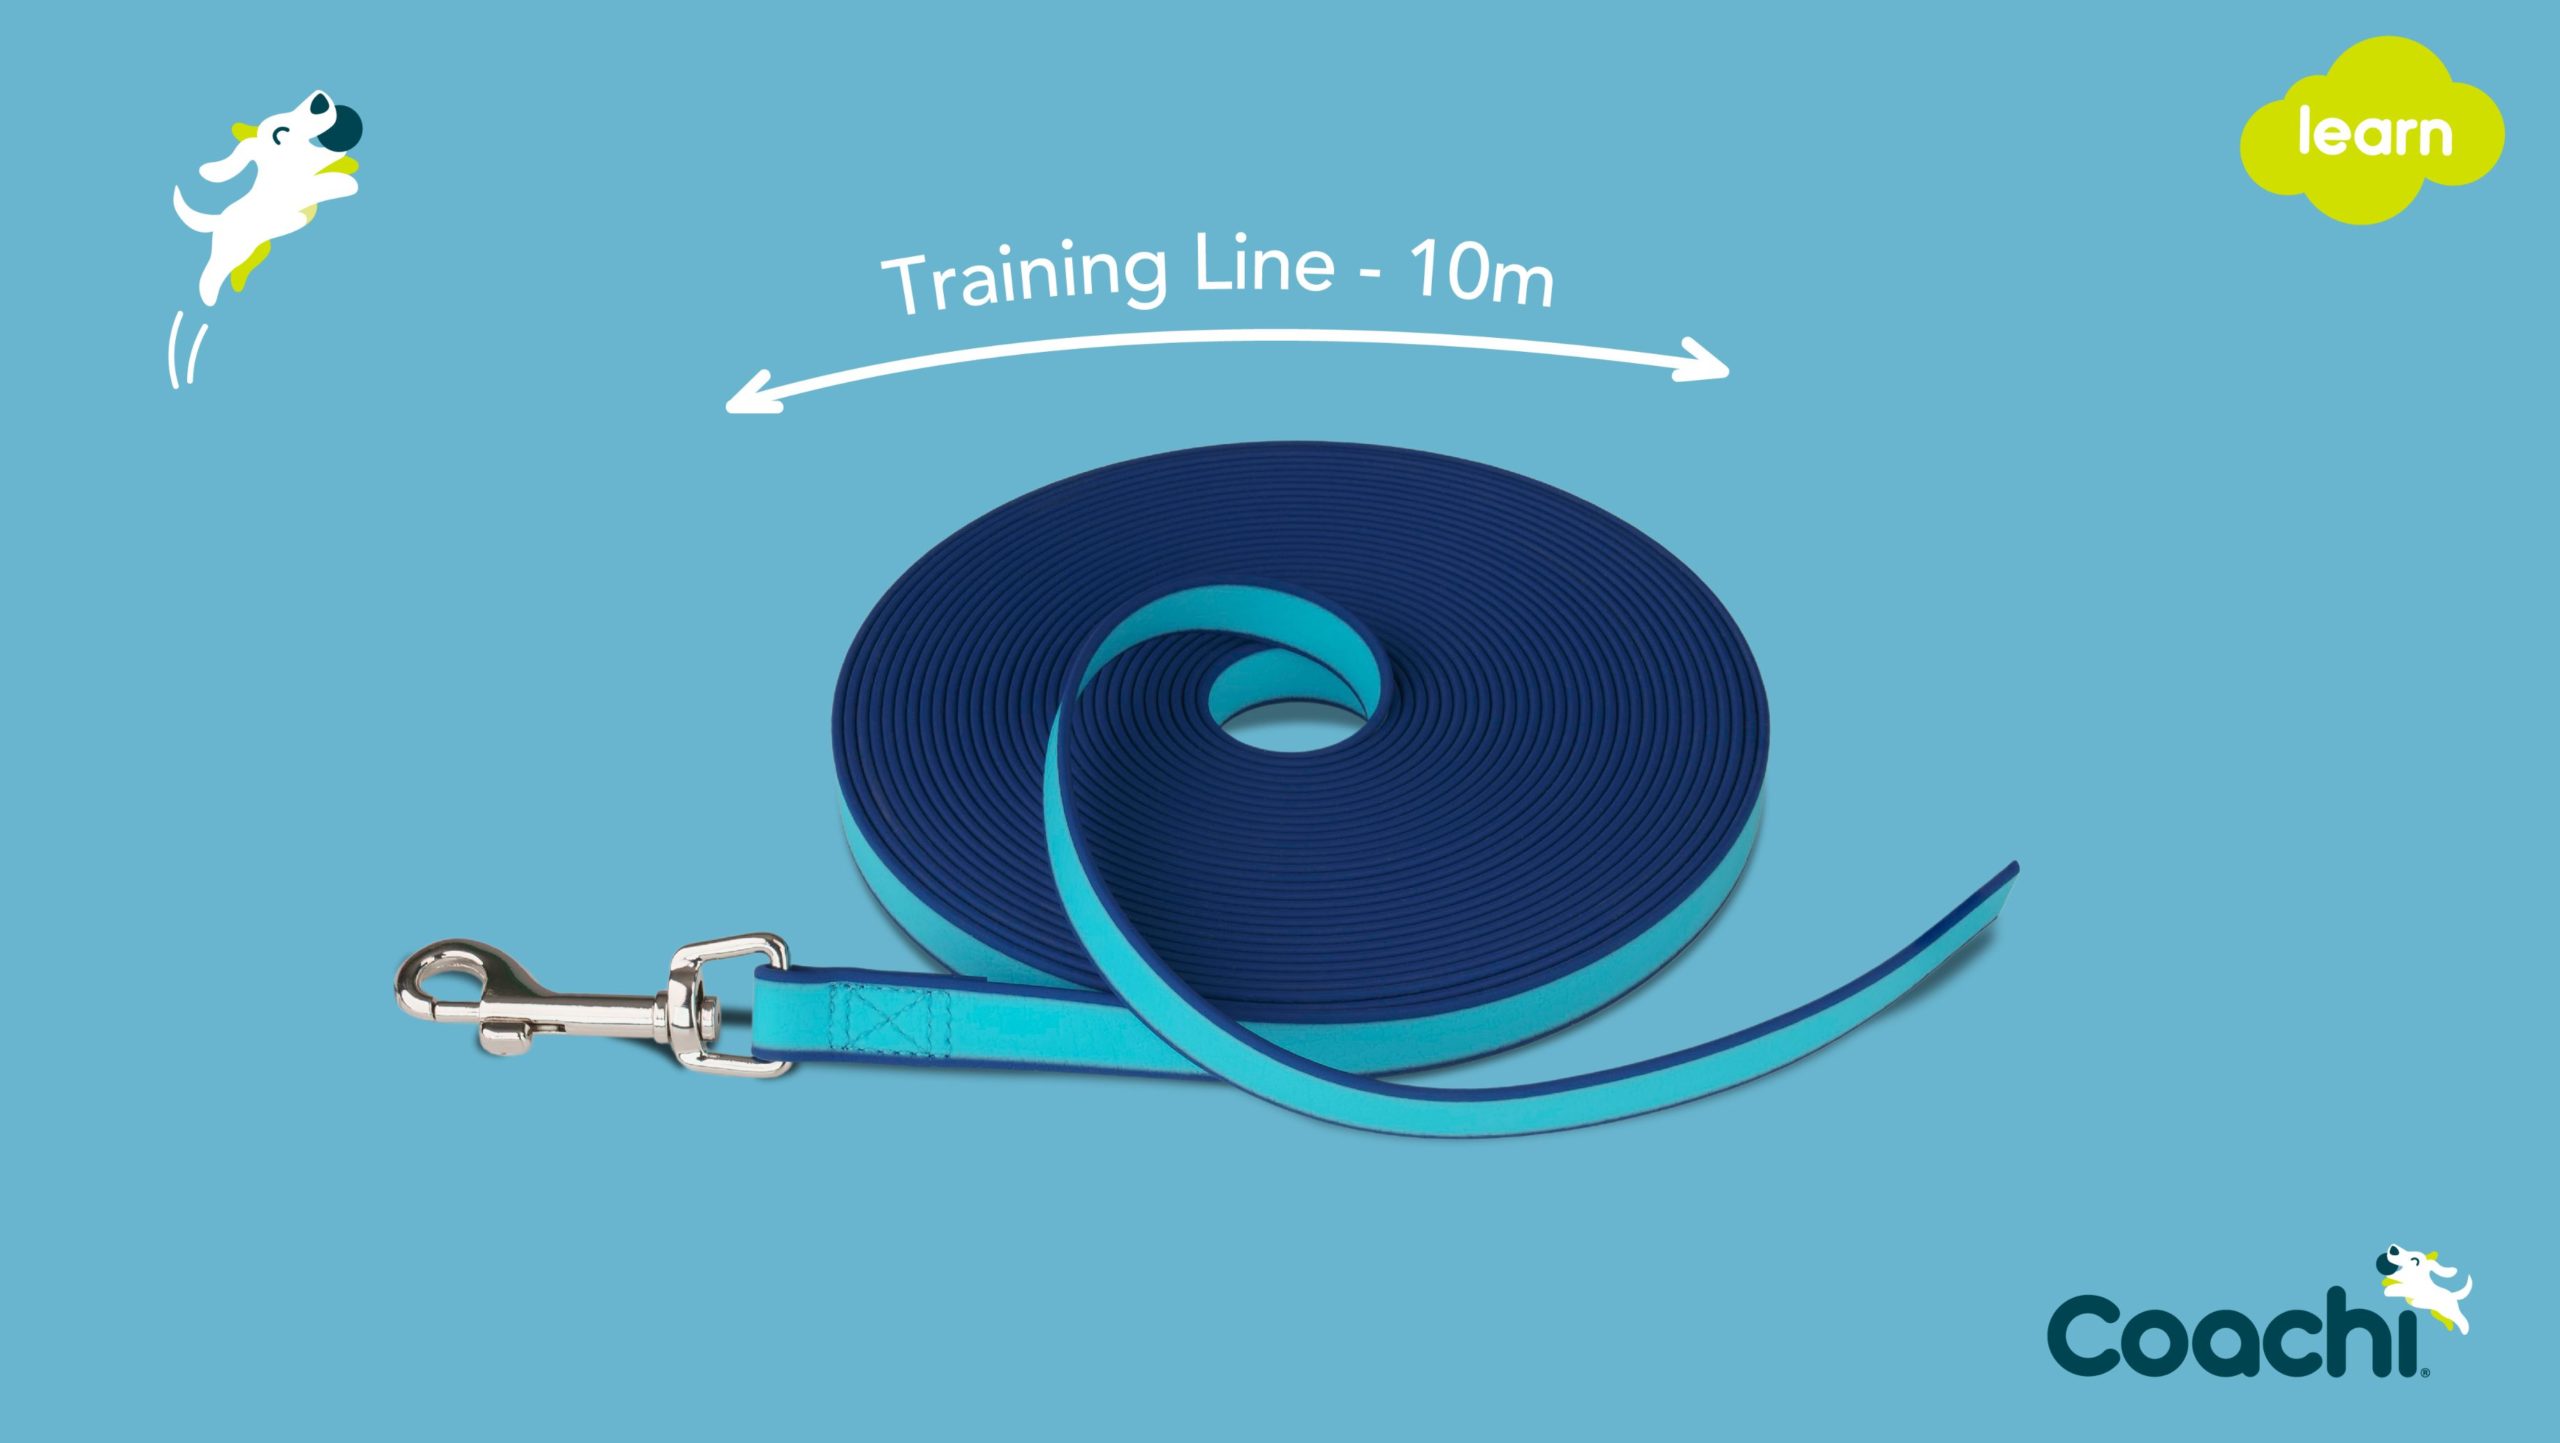 Waterproof training line dimensions